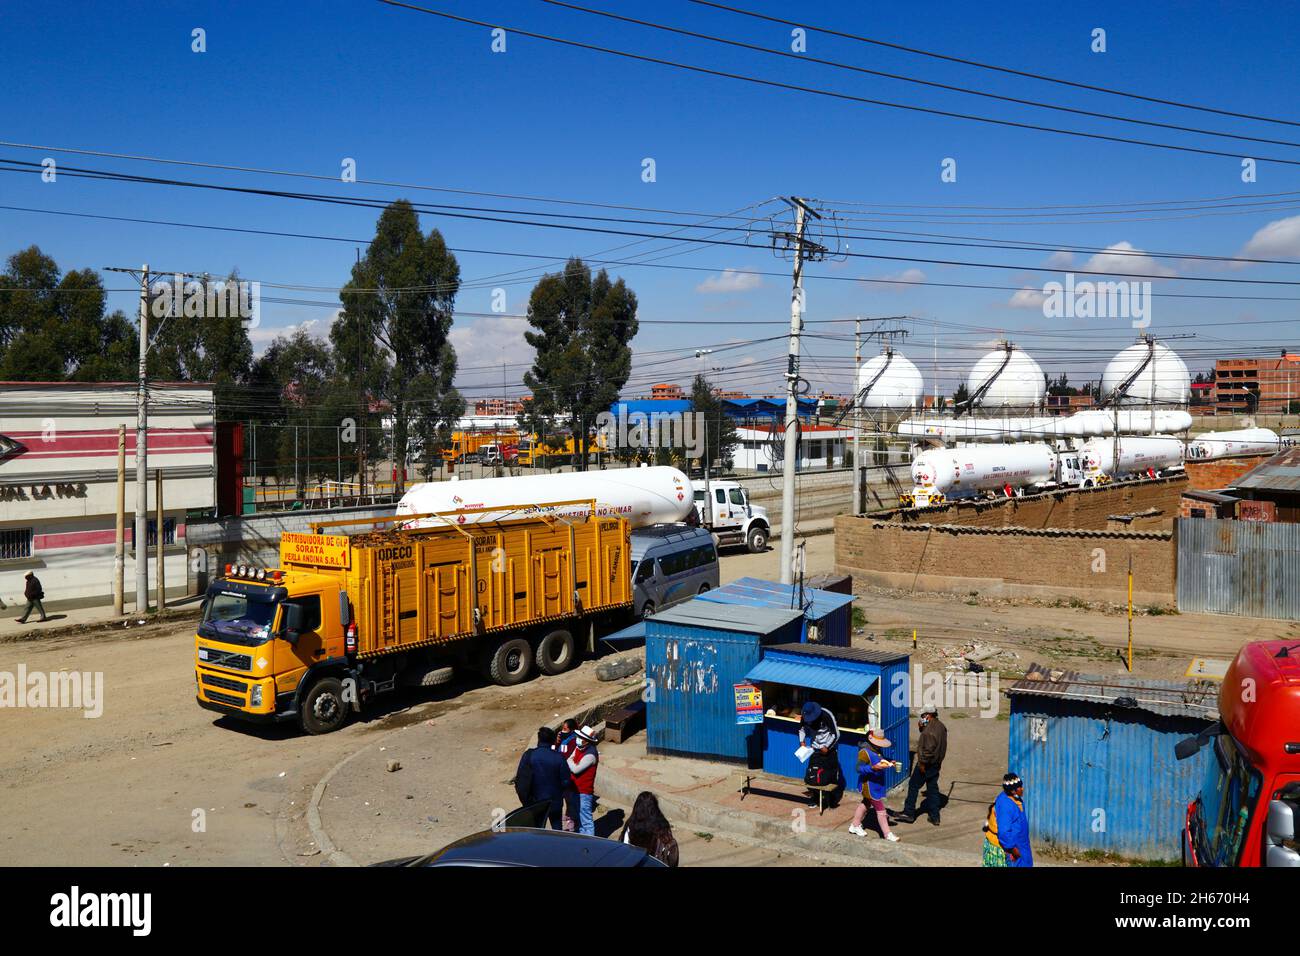 Senkata, El Alto, Bolivia. 13th de noviembre de 2021. Camiones cisterna de gas natural líquido y un camión de suministro de gas (amarillo) en las afueras de la planta de combustible Senkata en la Av 6 de Marzo / Camino Oruro en El Alto. Yacimientos Petrolíferos Fiscales Bolivianos (YPFB, la compañía estatal boliviana de petróleo y gas) tiene una gran refinería y planta de almacenamiento aquí, Que suministra a La Paz, El Alto y sus alrededores gasolina / gasolina, diesel y gas natural líquido (en botellas para uso doméstico y también para vehículos y otras industrias). En el fondo están algunos de los tanques esféricos de almacenamiento de gas. Foto de stock